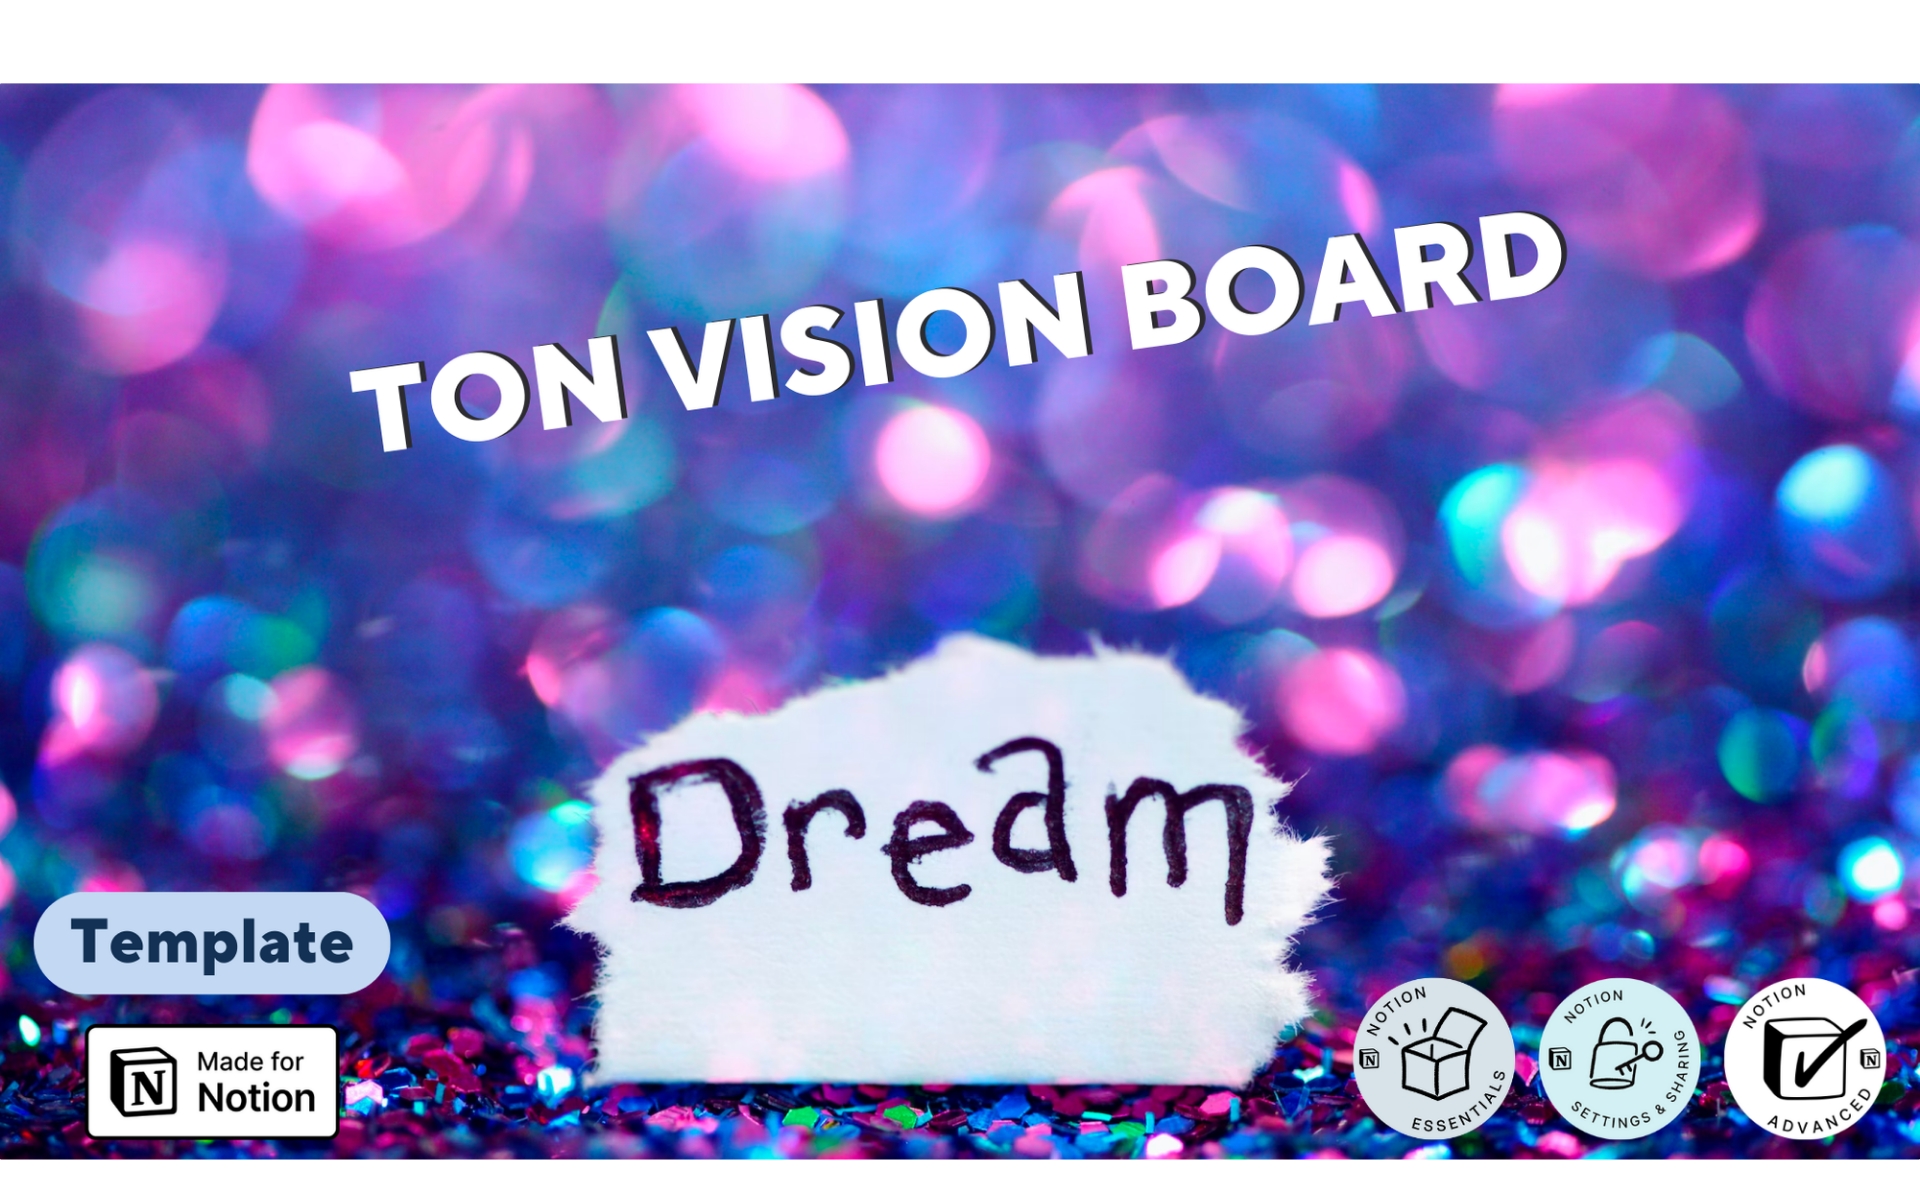 Ce template de vision board va te permettre de créer ton vision board en te donnant au passage un peu d’inspiration